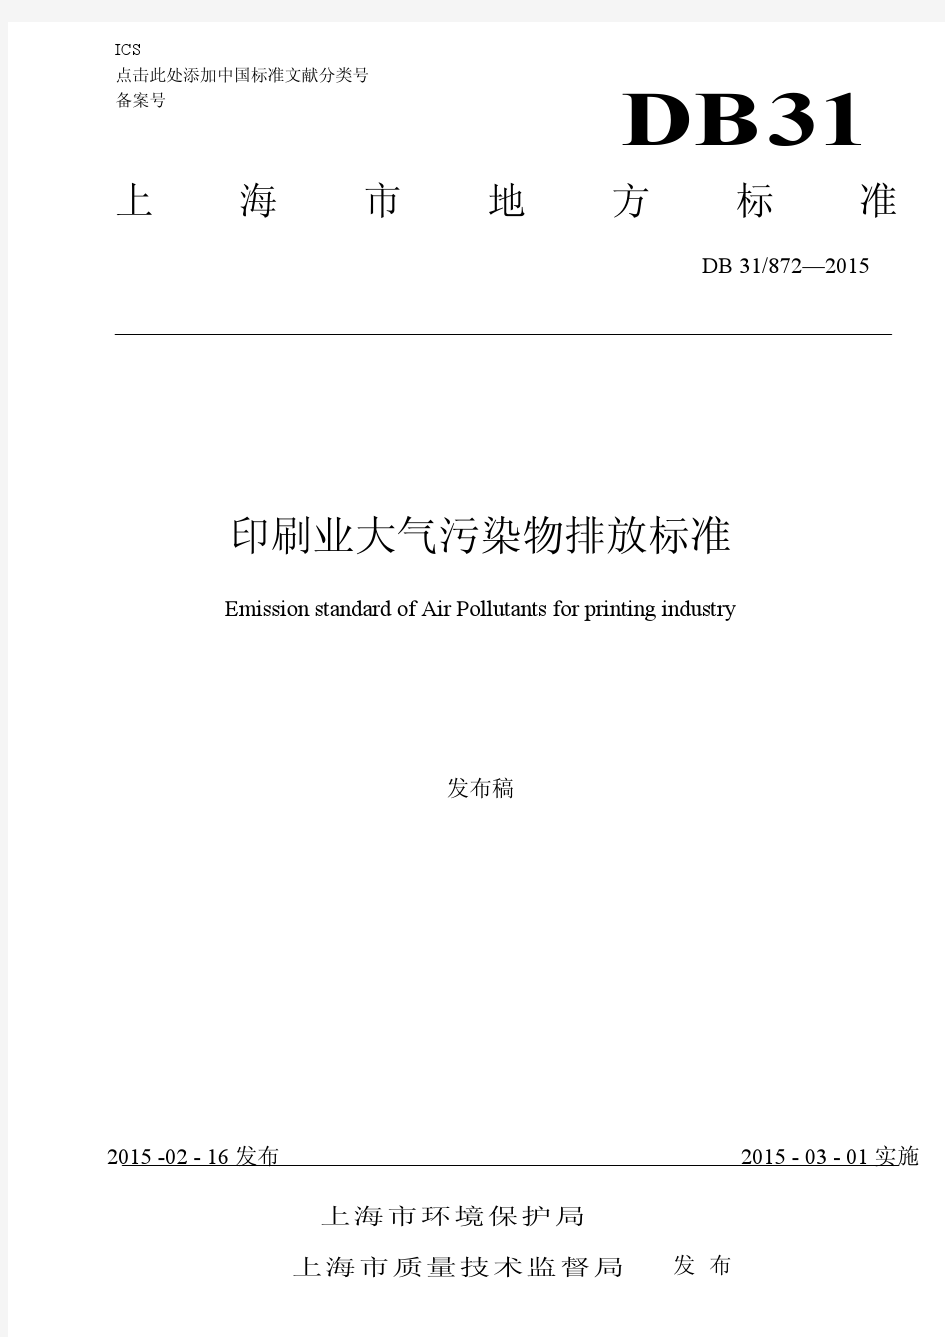 DB31 872—2015上海市地方污染物排放标准《印刷业大气污染物排放标准》